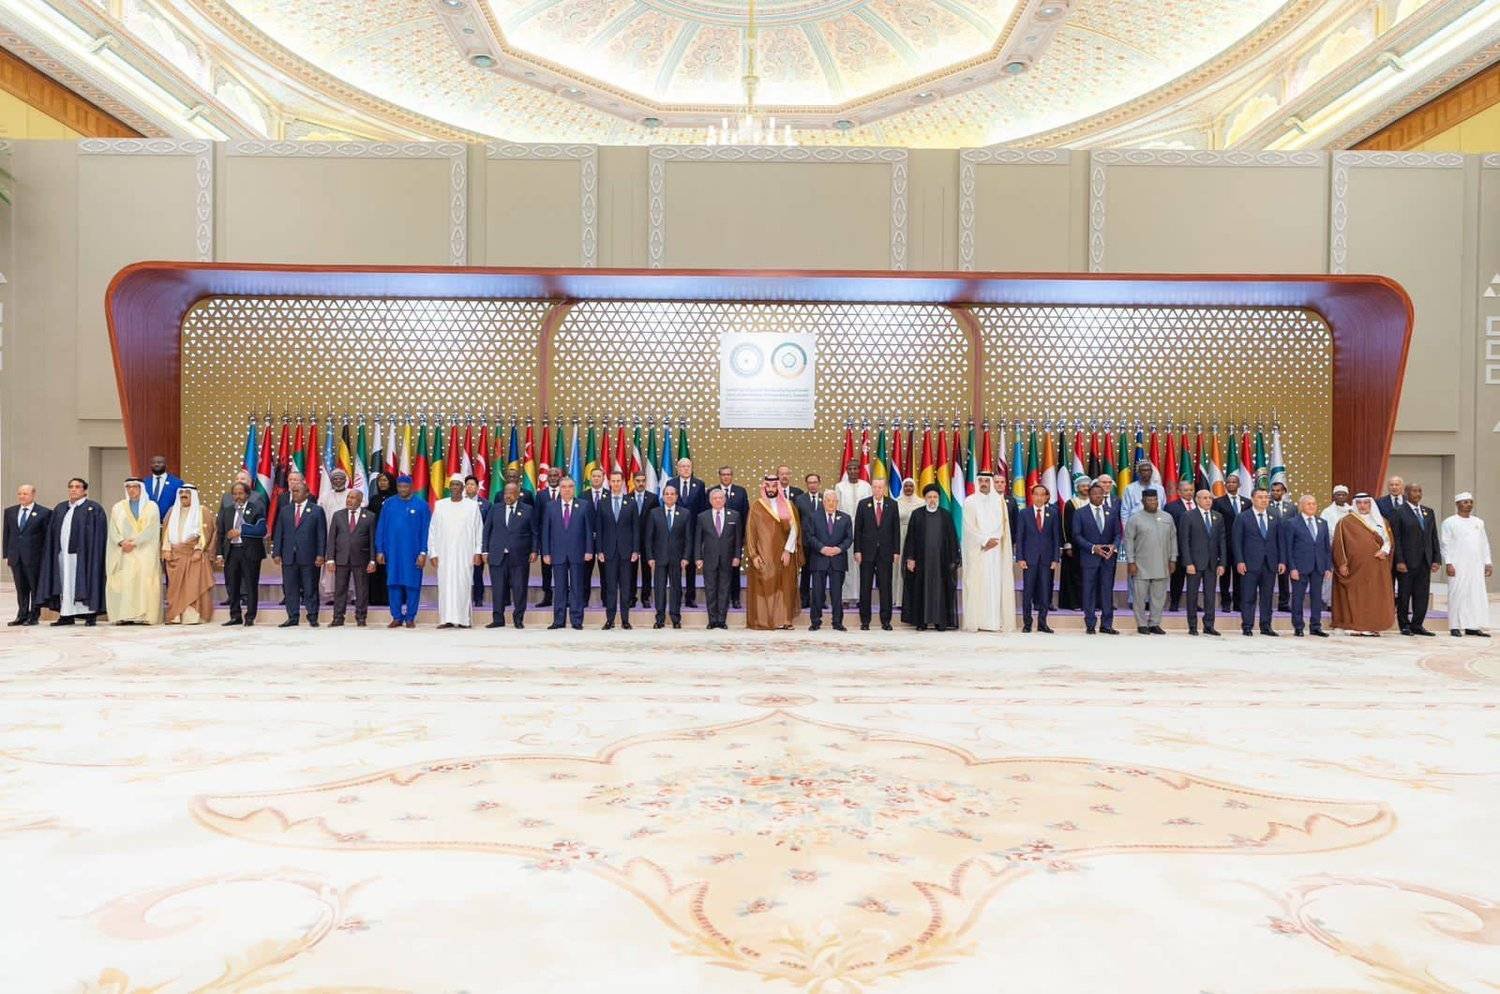 صورة جماعية للقادة المشاركين في القمة العربية - الإسلامية الأخيرة في الرياض (واس)